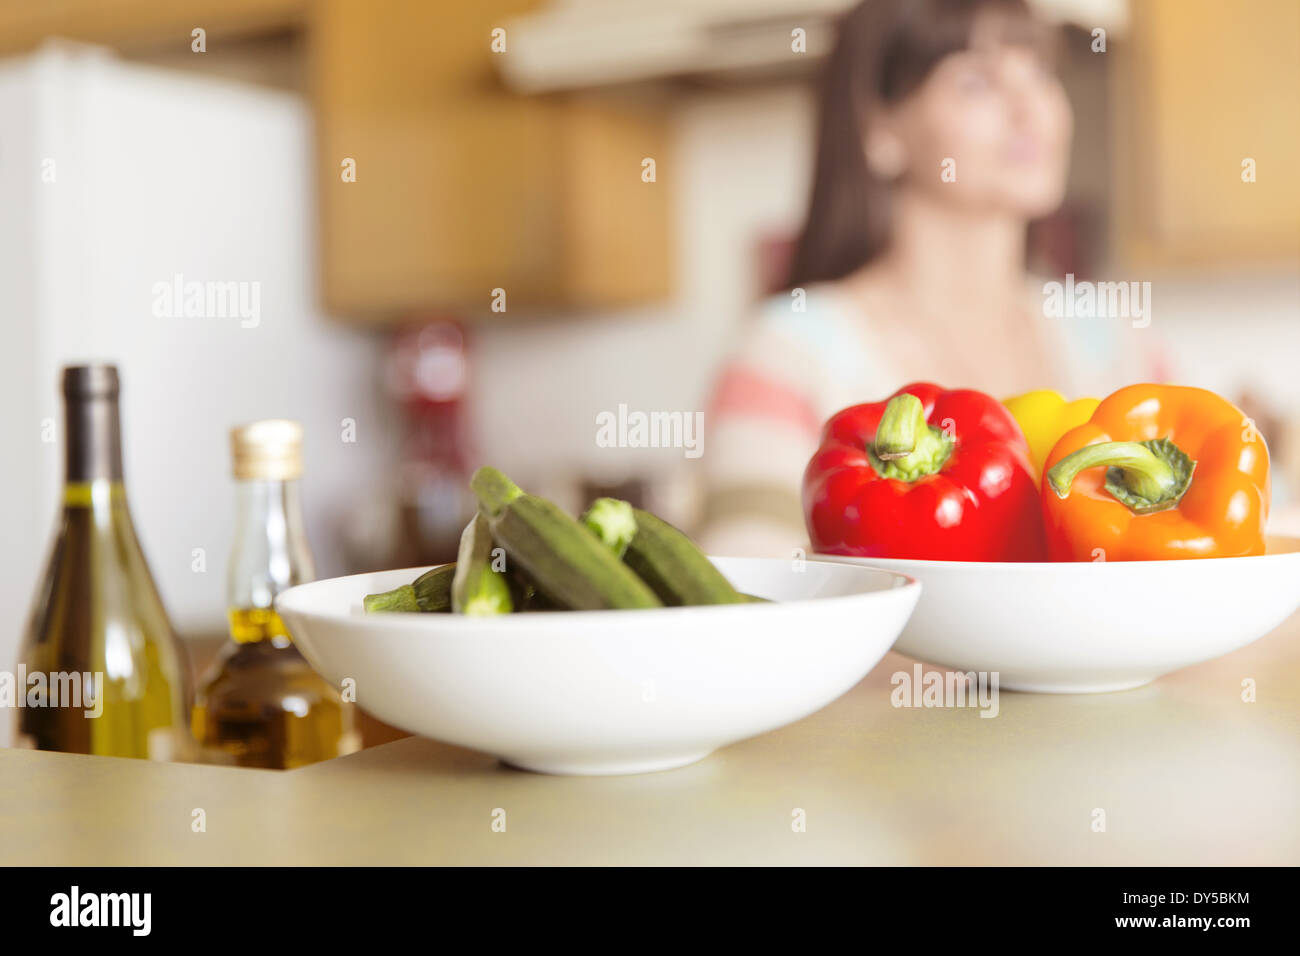 Mid adult woman in kitchen avec bols de légumes sur le comptoir Banque D'Images